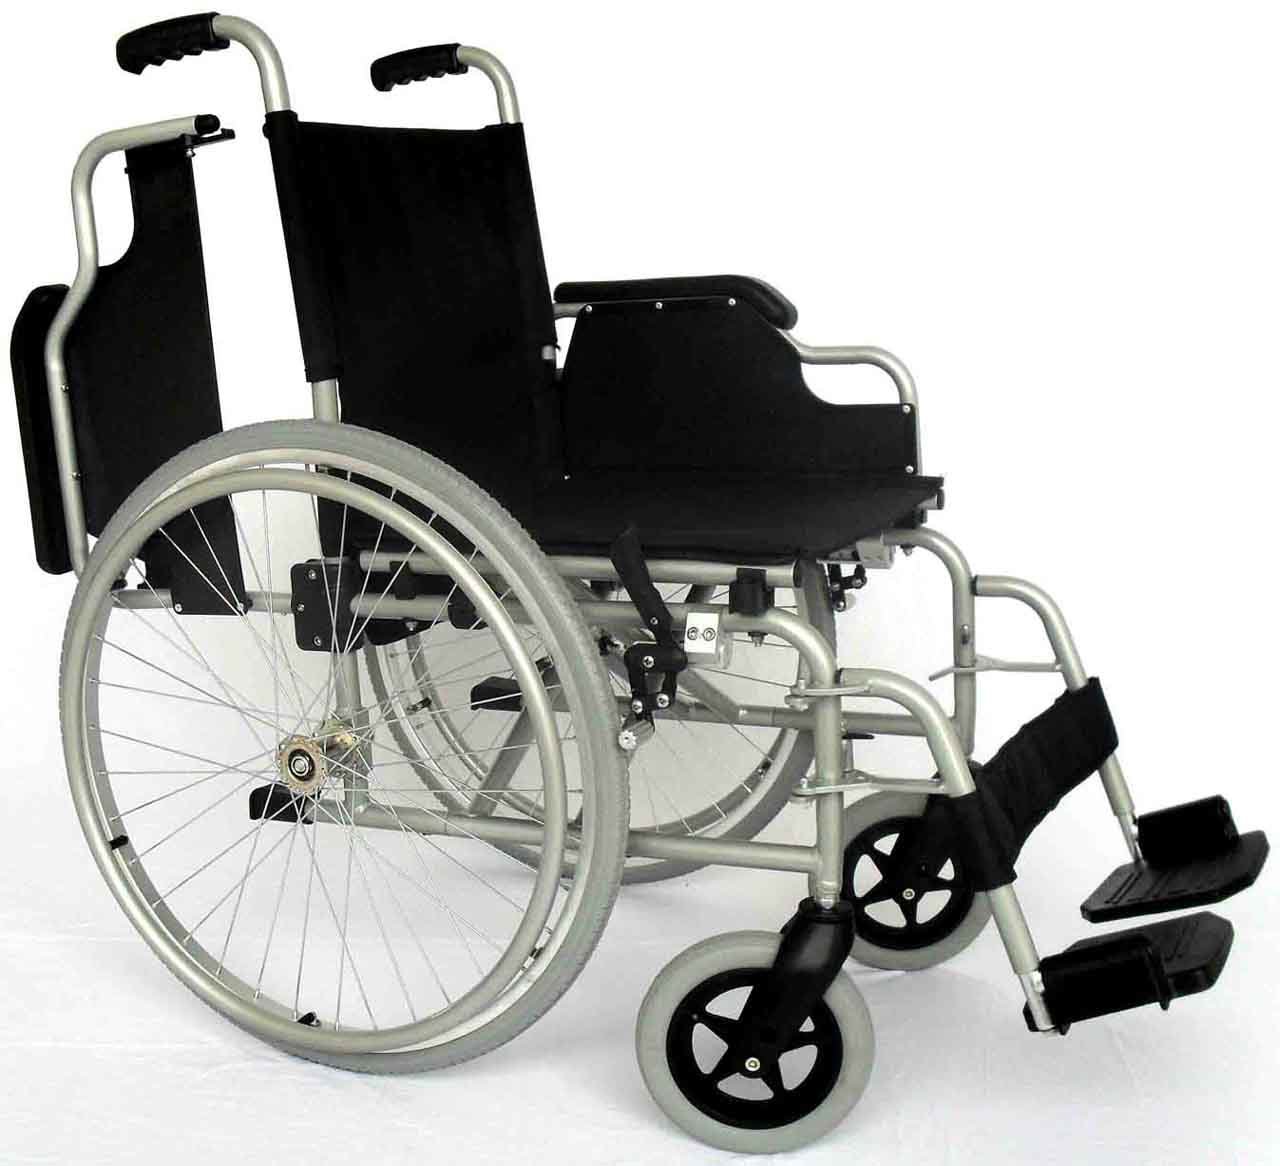 Manual Folding Wheelchair - Aluminium Lightweight (SX614)